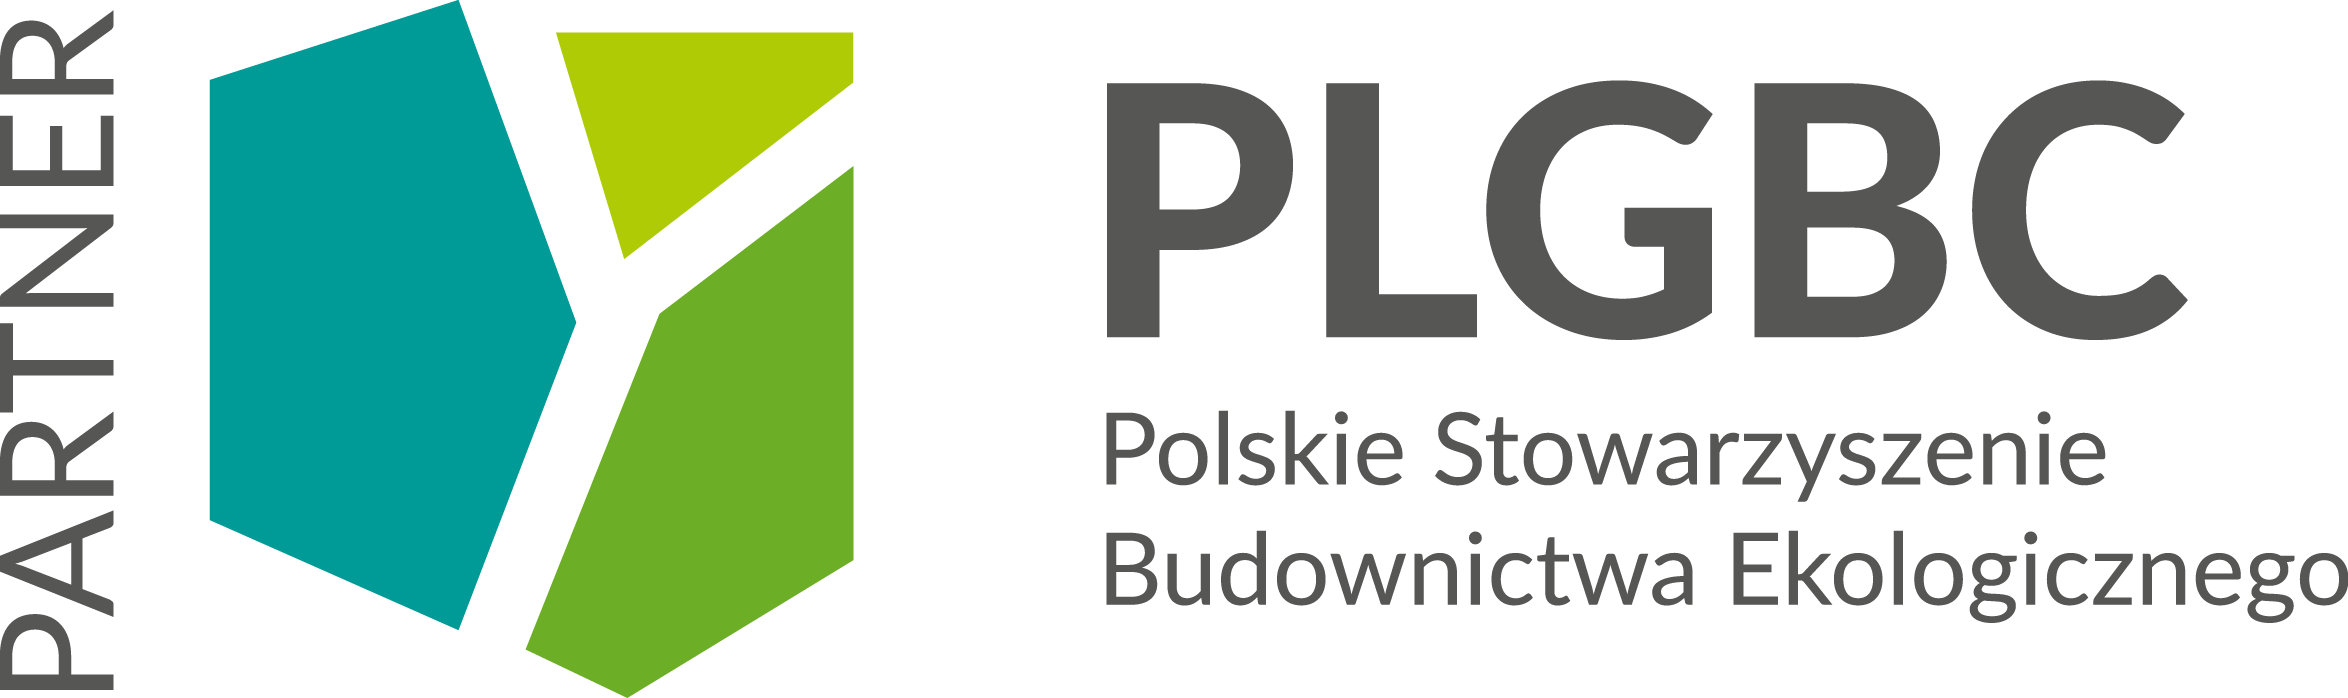 Polskie Stowarzyszenie Budownictwa Ekologicznego